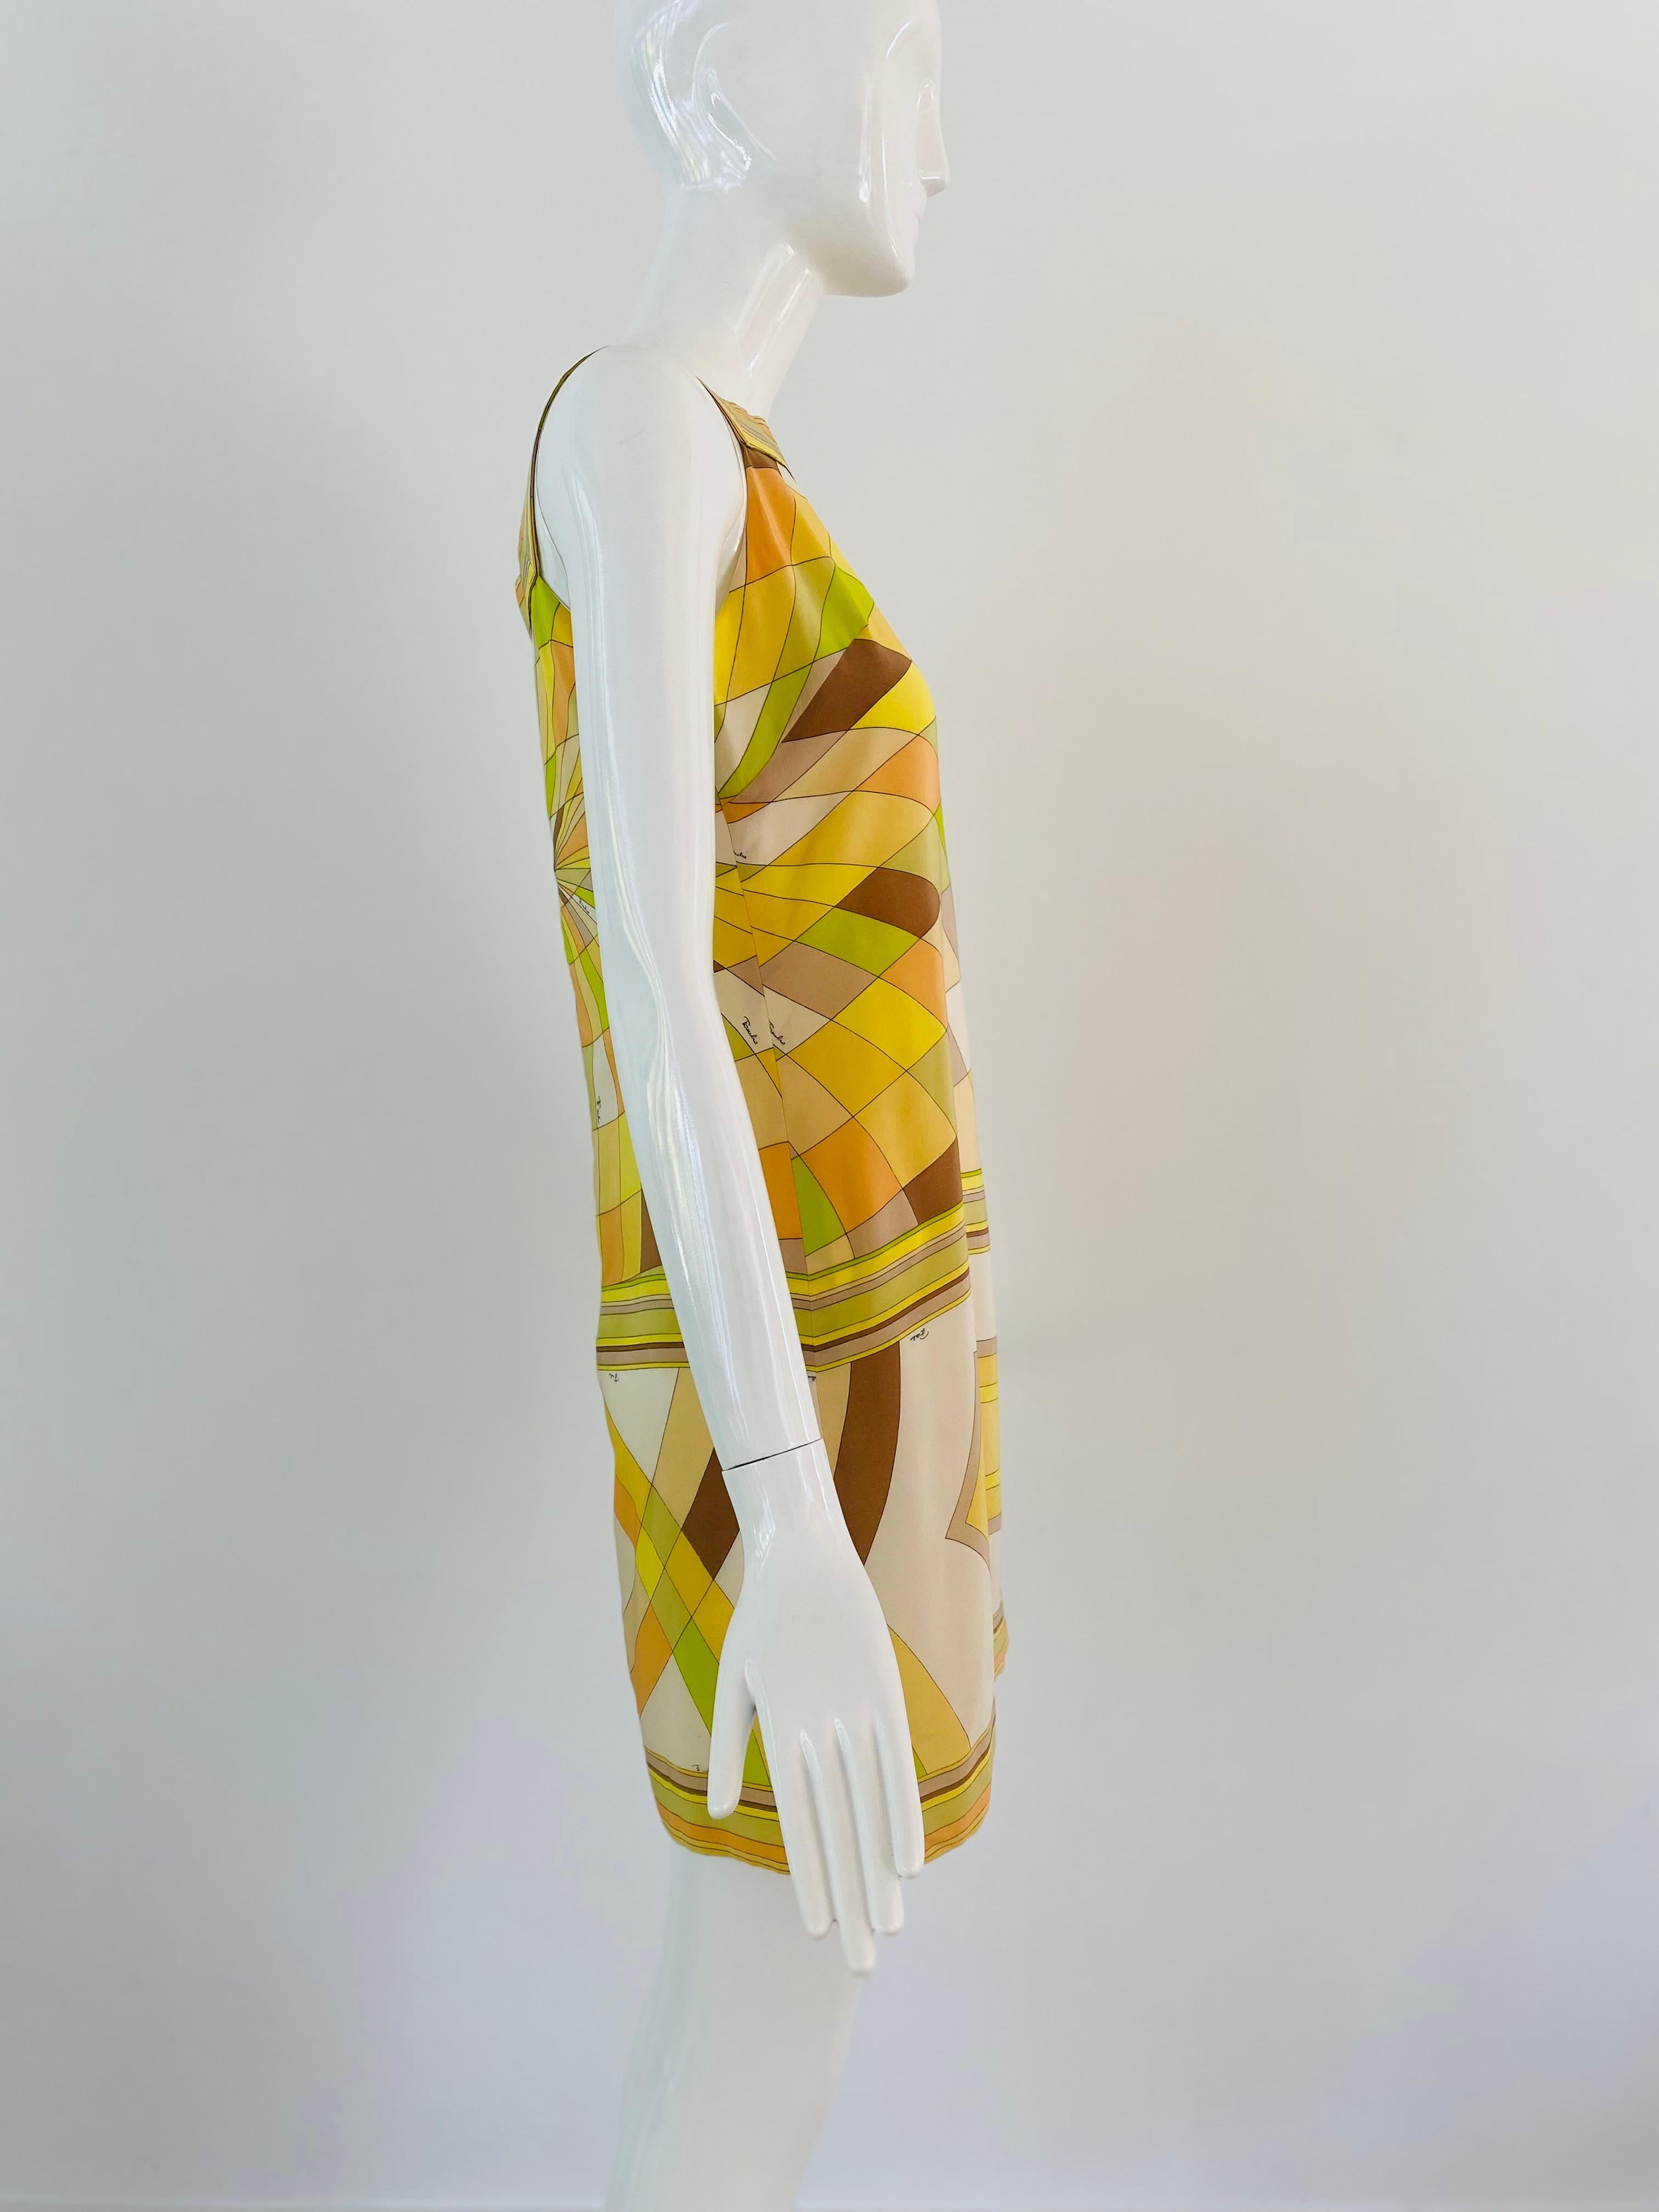 Plongez dans l'univers vibrant de la mode des années 1960 avec ce magnifique  Robe Pucci. Confectionnée en soie luxueuse, cette mini robe présente les éléments de design emblématiques qui ont fait la renommée d'Emilio Pucci à cette époque. La robe